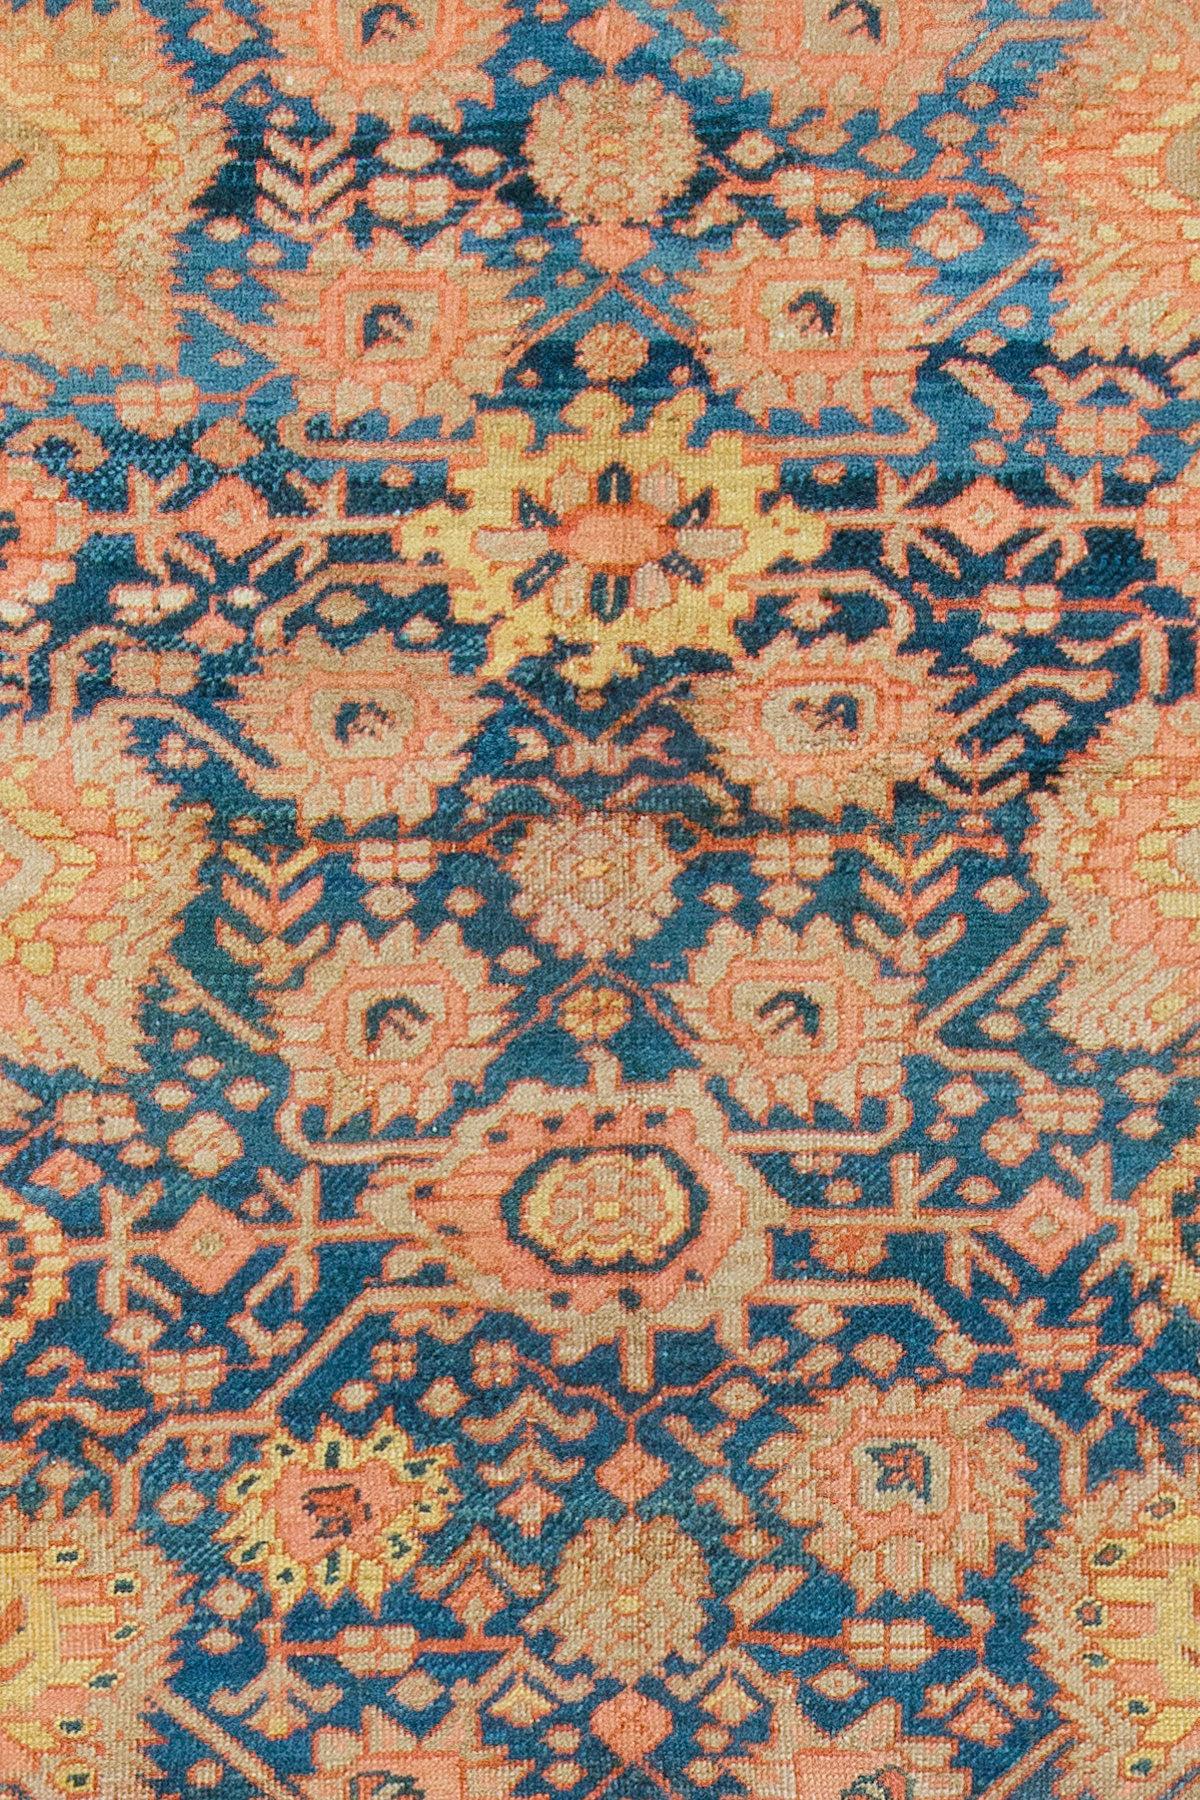 Sehr sammelwürdig Qualität übergroßen blauen Farbe all-over-Feld 19. Jahrhundert persischen Bakschaisch Teppich. Die harmonischen Farben, die geschickte Geometrie und die Kunstfertigkeit der Weber machen diesen Teppich zu einem absoluten